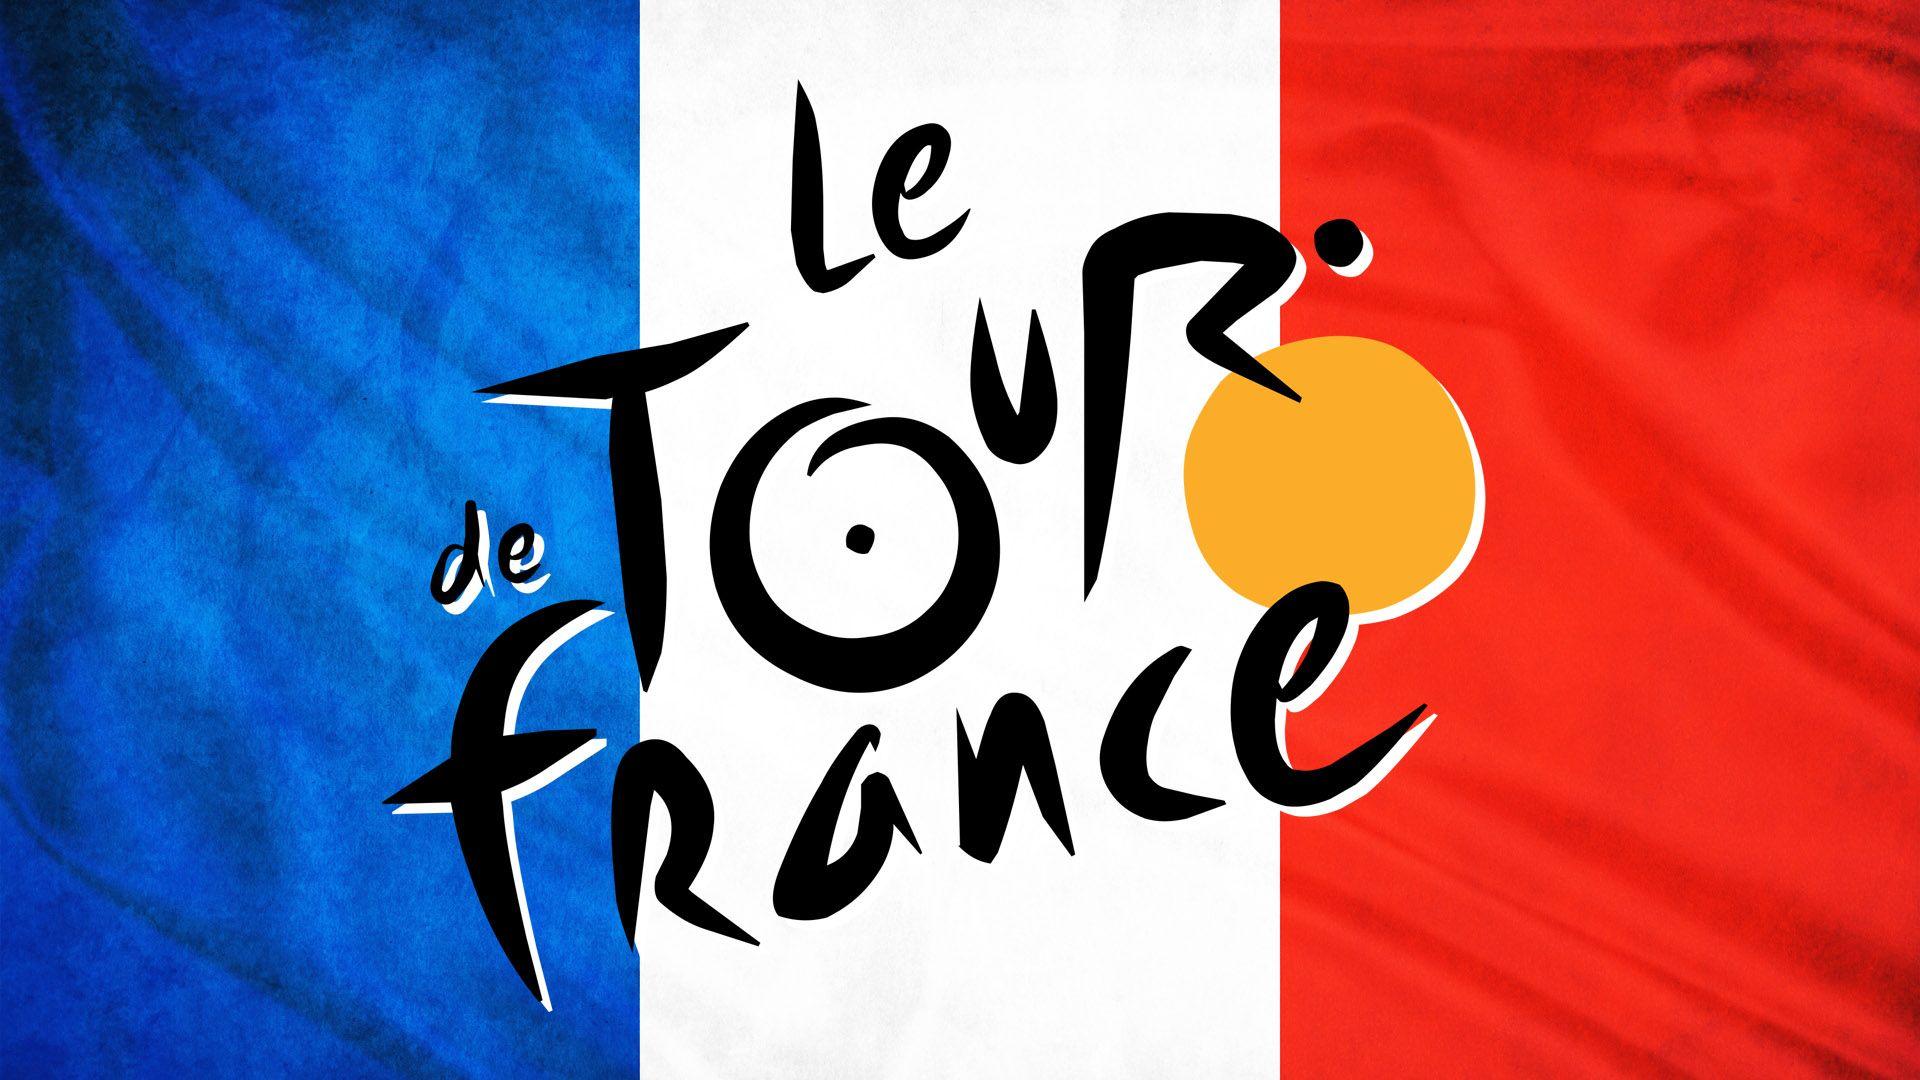 Tour De France Wallpaper